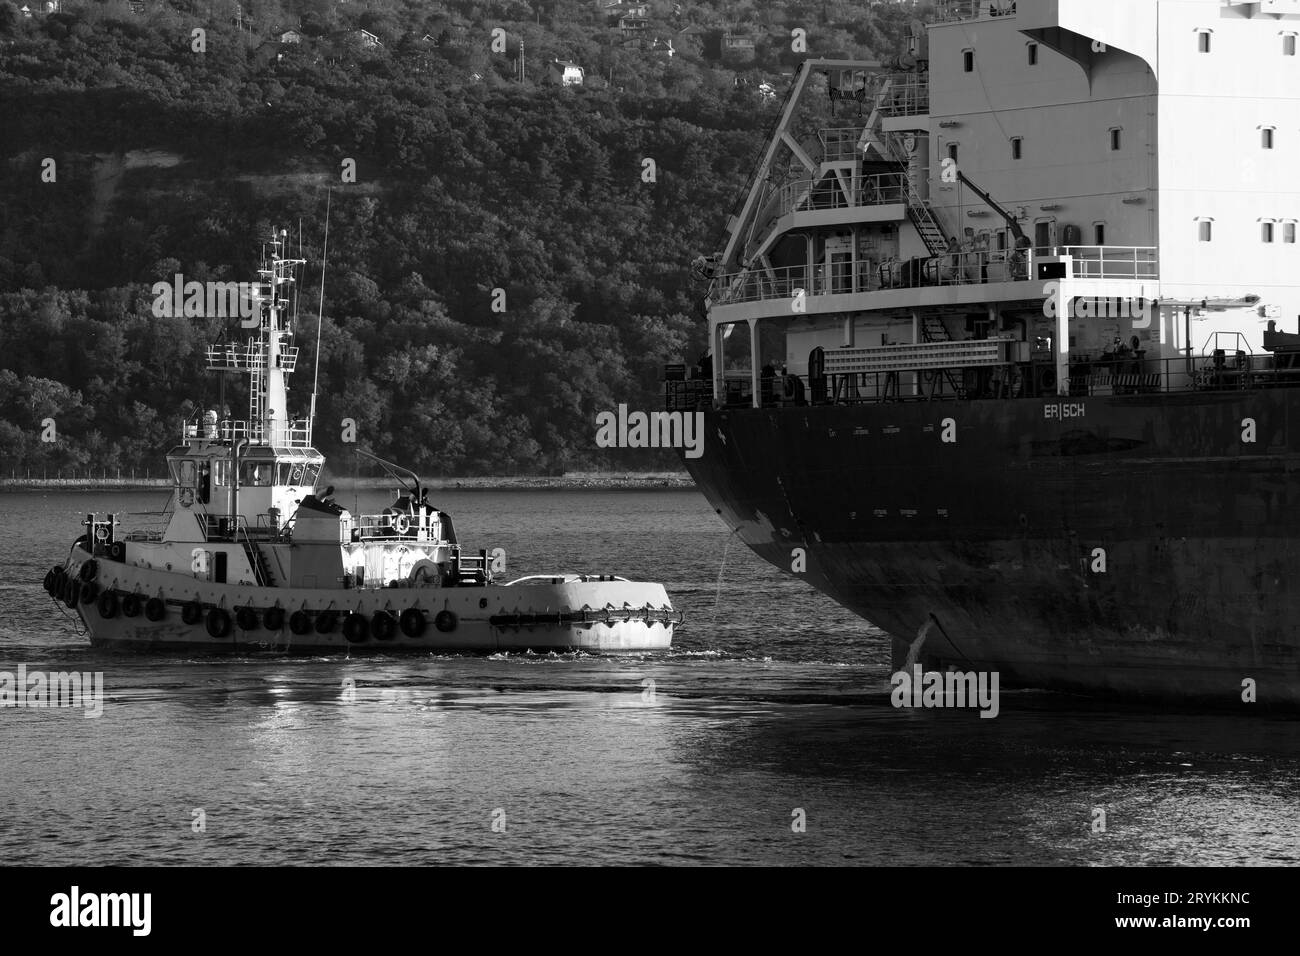 Tug boat is near a cargo ship. Black sea, Varna harbor, Bulgaria. Black and white photo Stock Photo